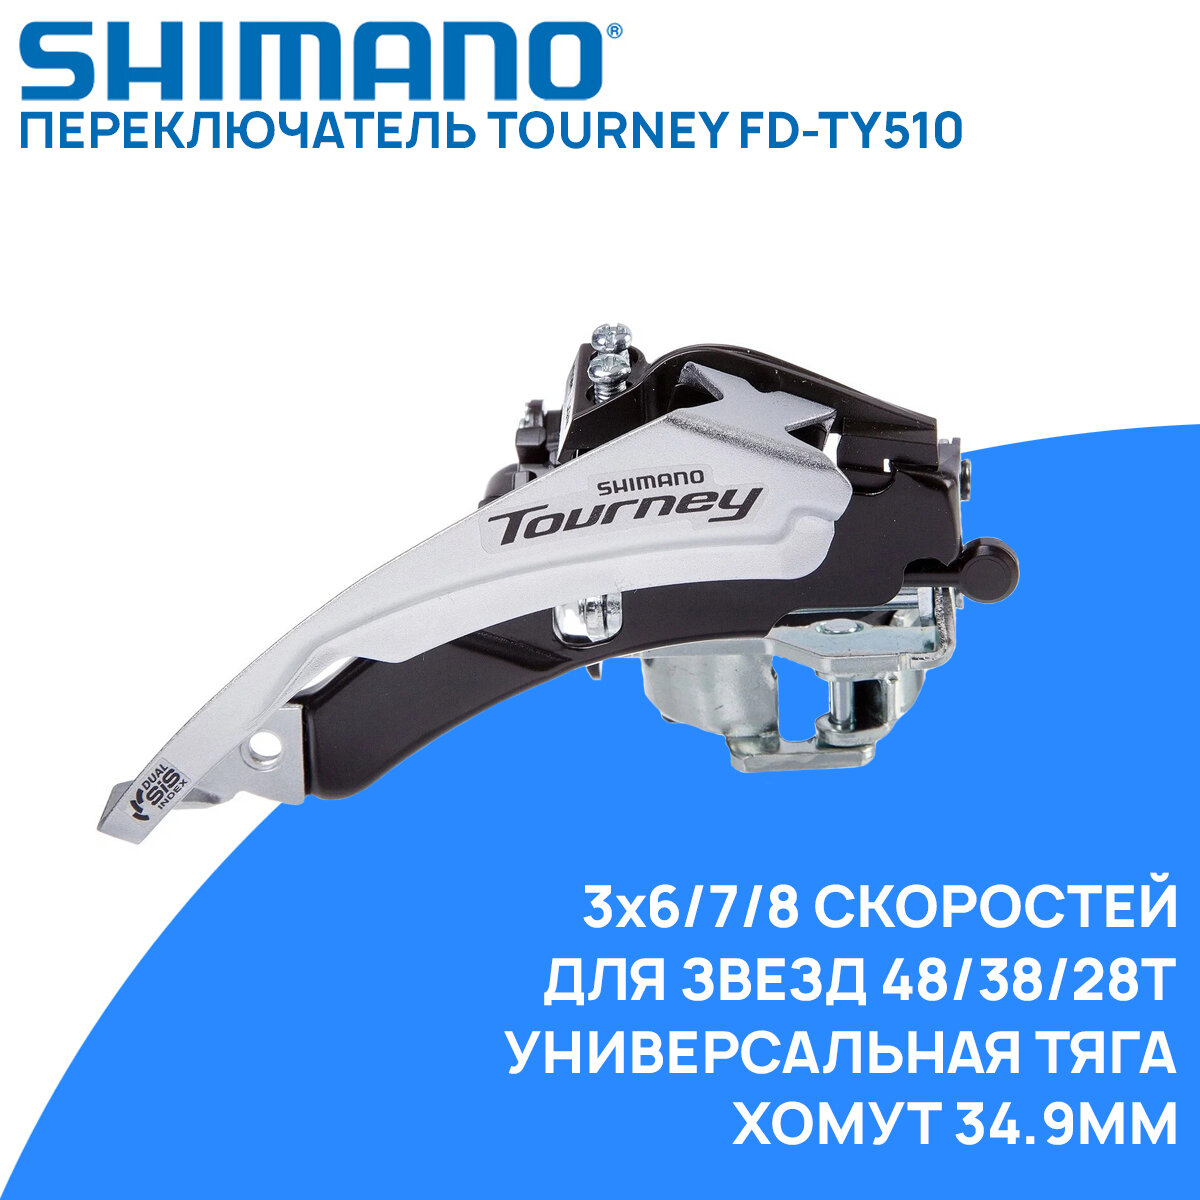 Переключатель передний Shimano FD-TY510, унив. тяга, 3x6/7/8 ск, хомут 34.9мм, 66-69 градусов